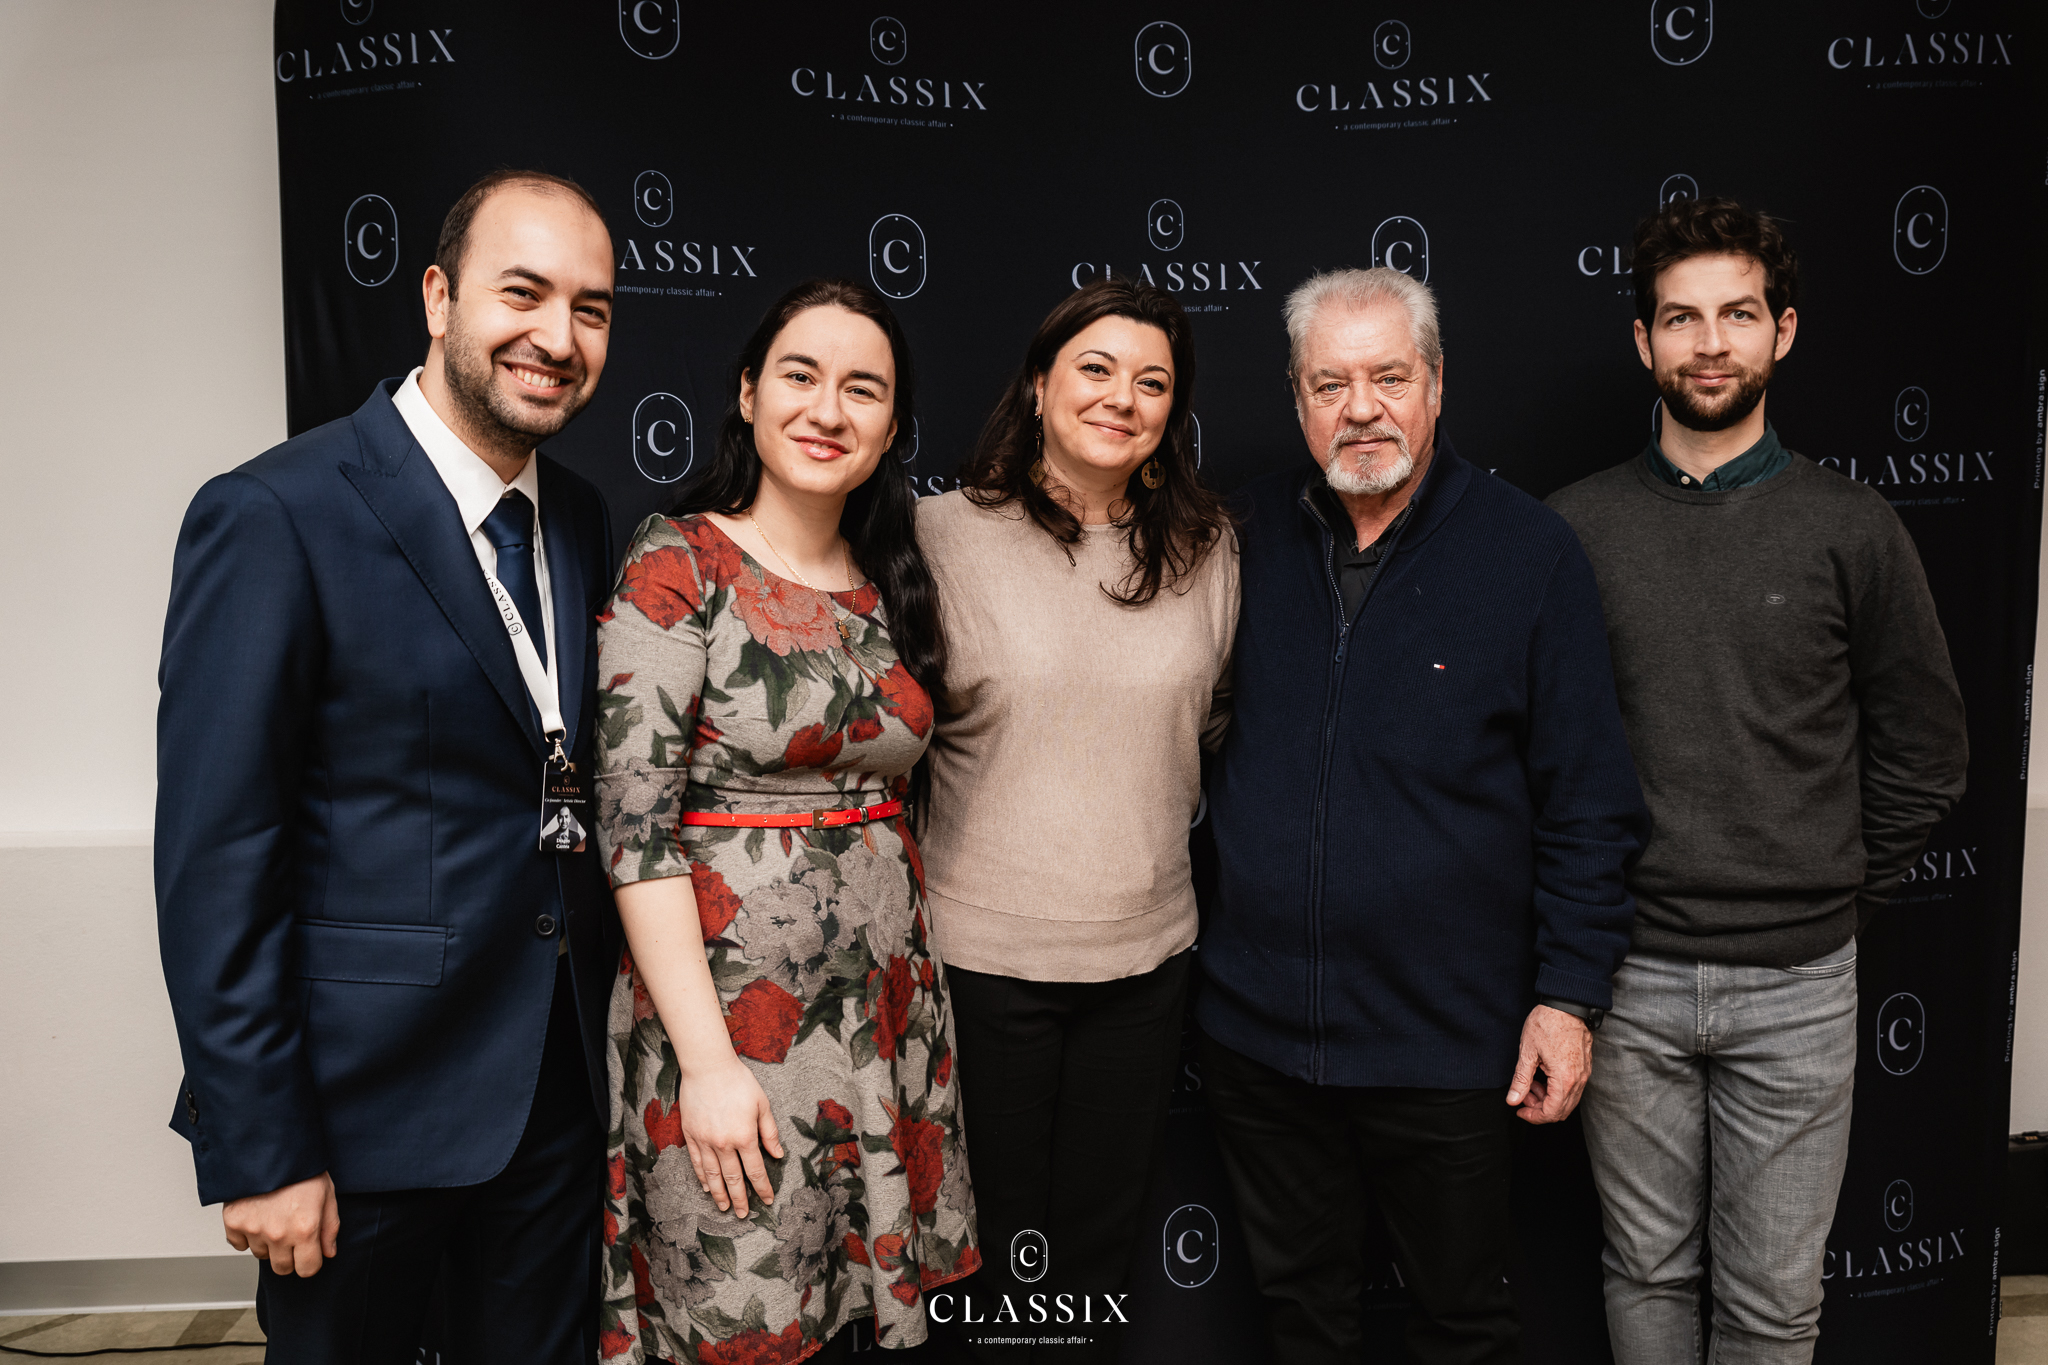 Concursul Internațional George Enescu prezentat în cadrul Classix in Focus